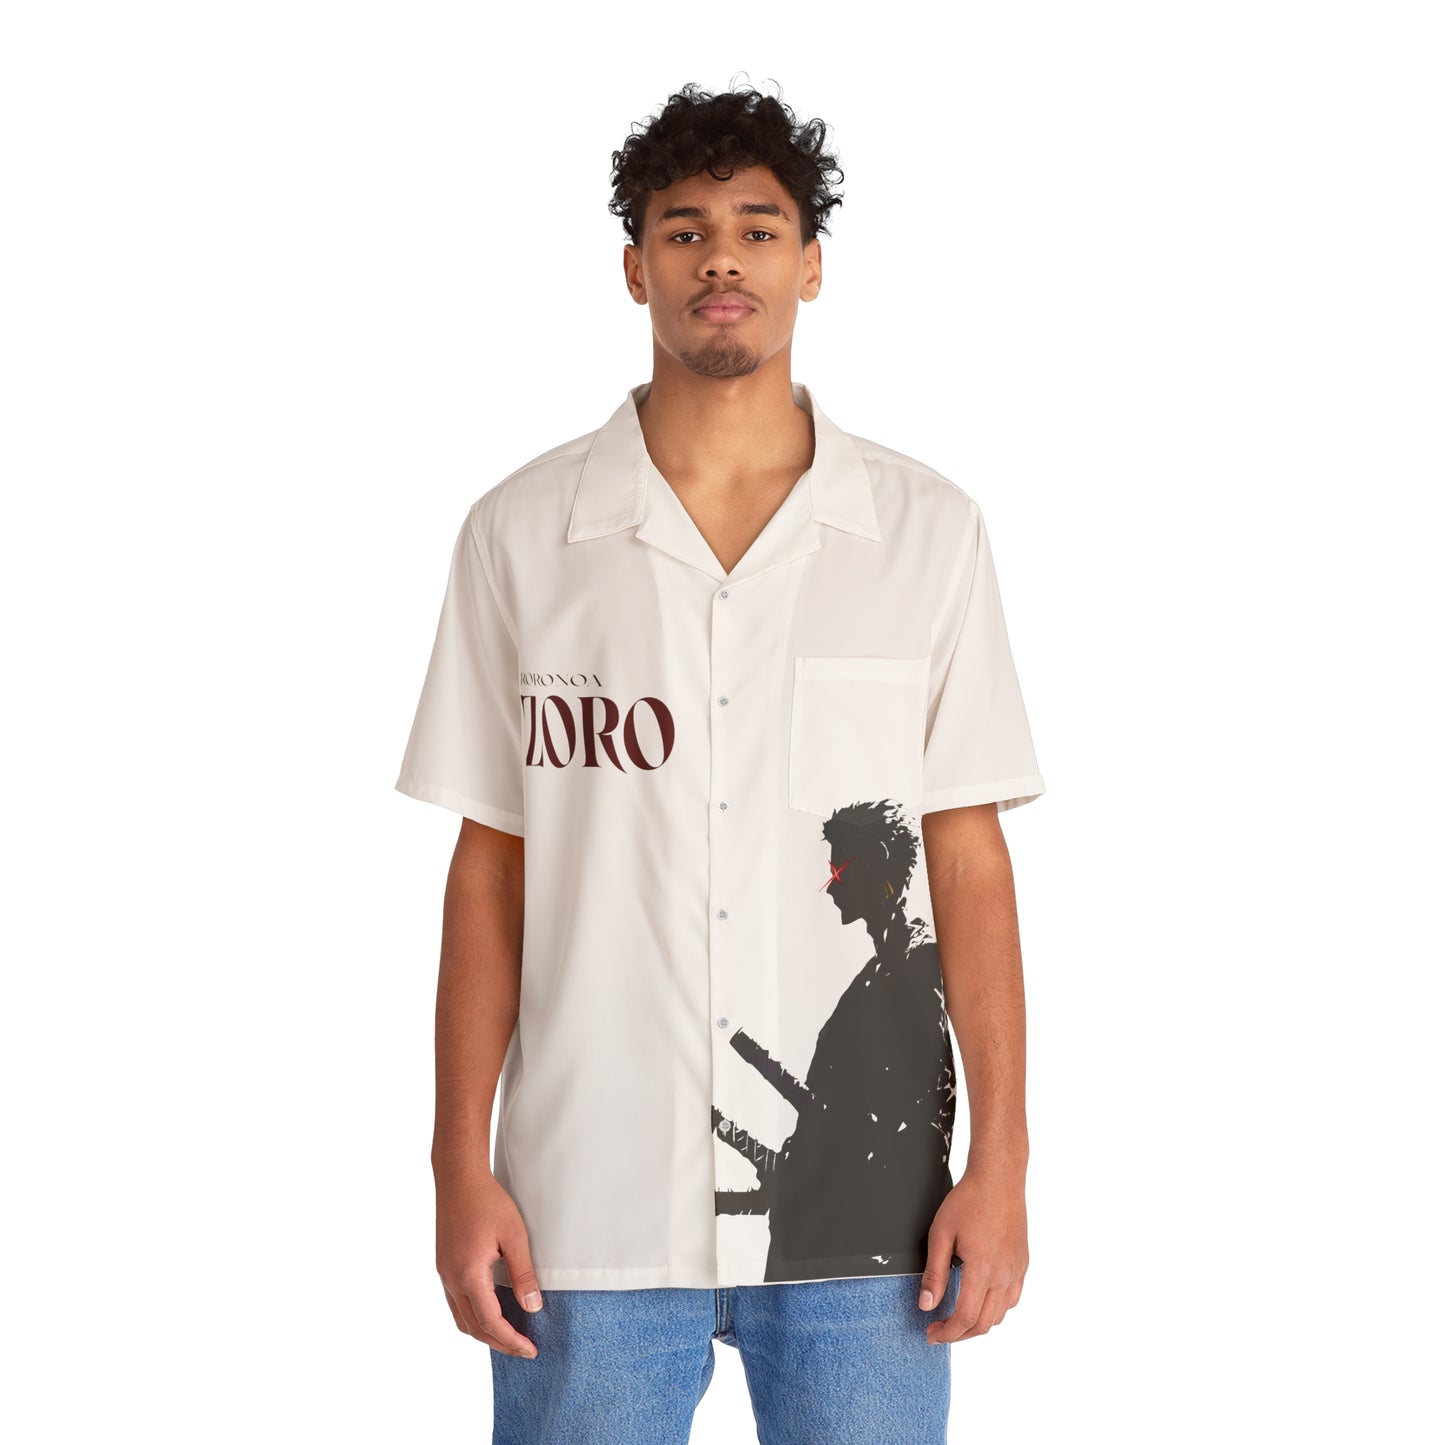 Hawaiian Shirt - Roronoa Zoro